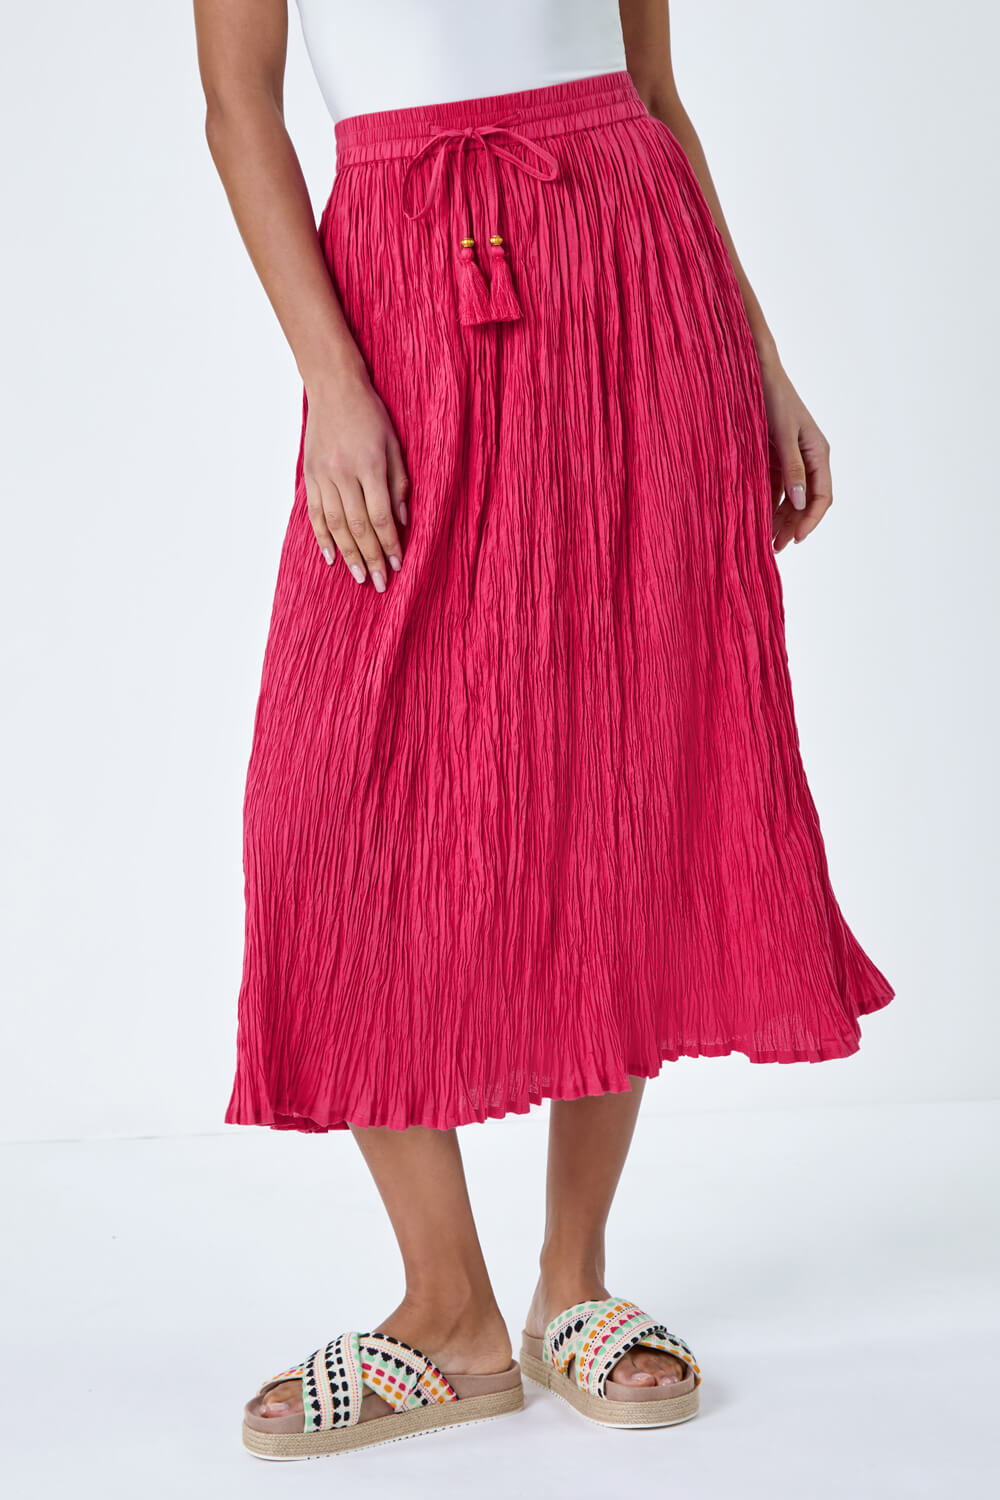 PINK Crinkle Cotton Textured Tassel Midi Skirt, Image 4 of 5